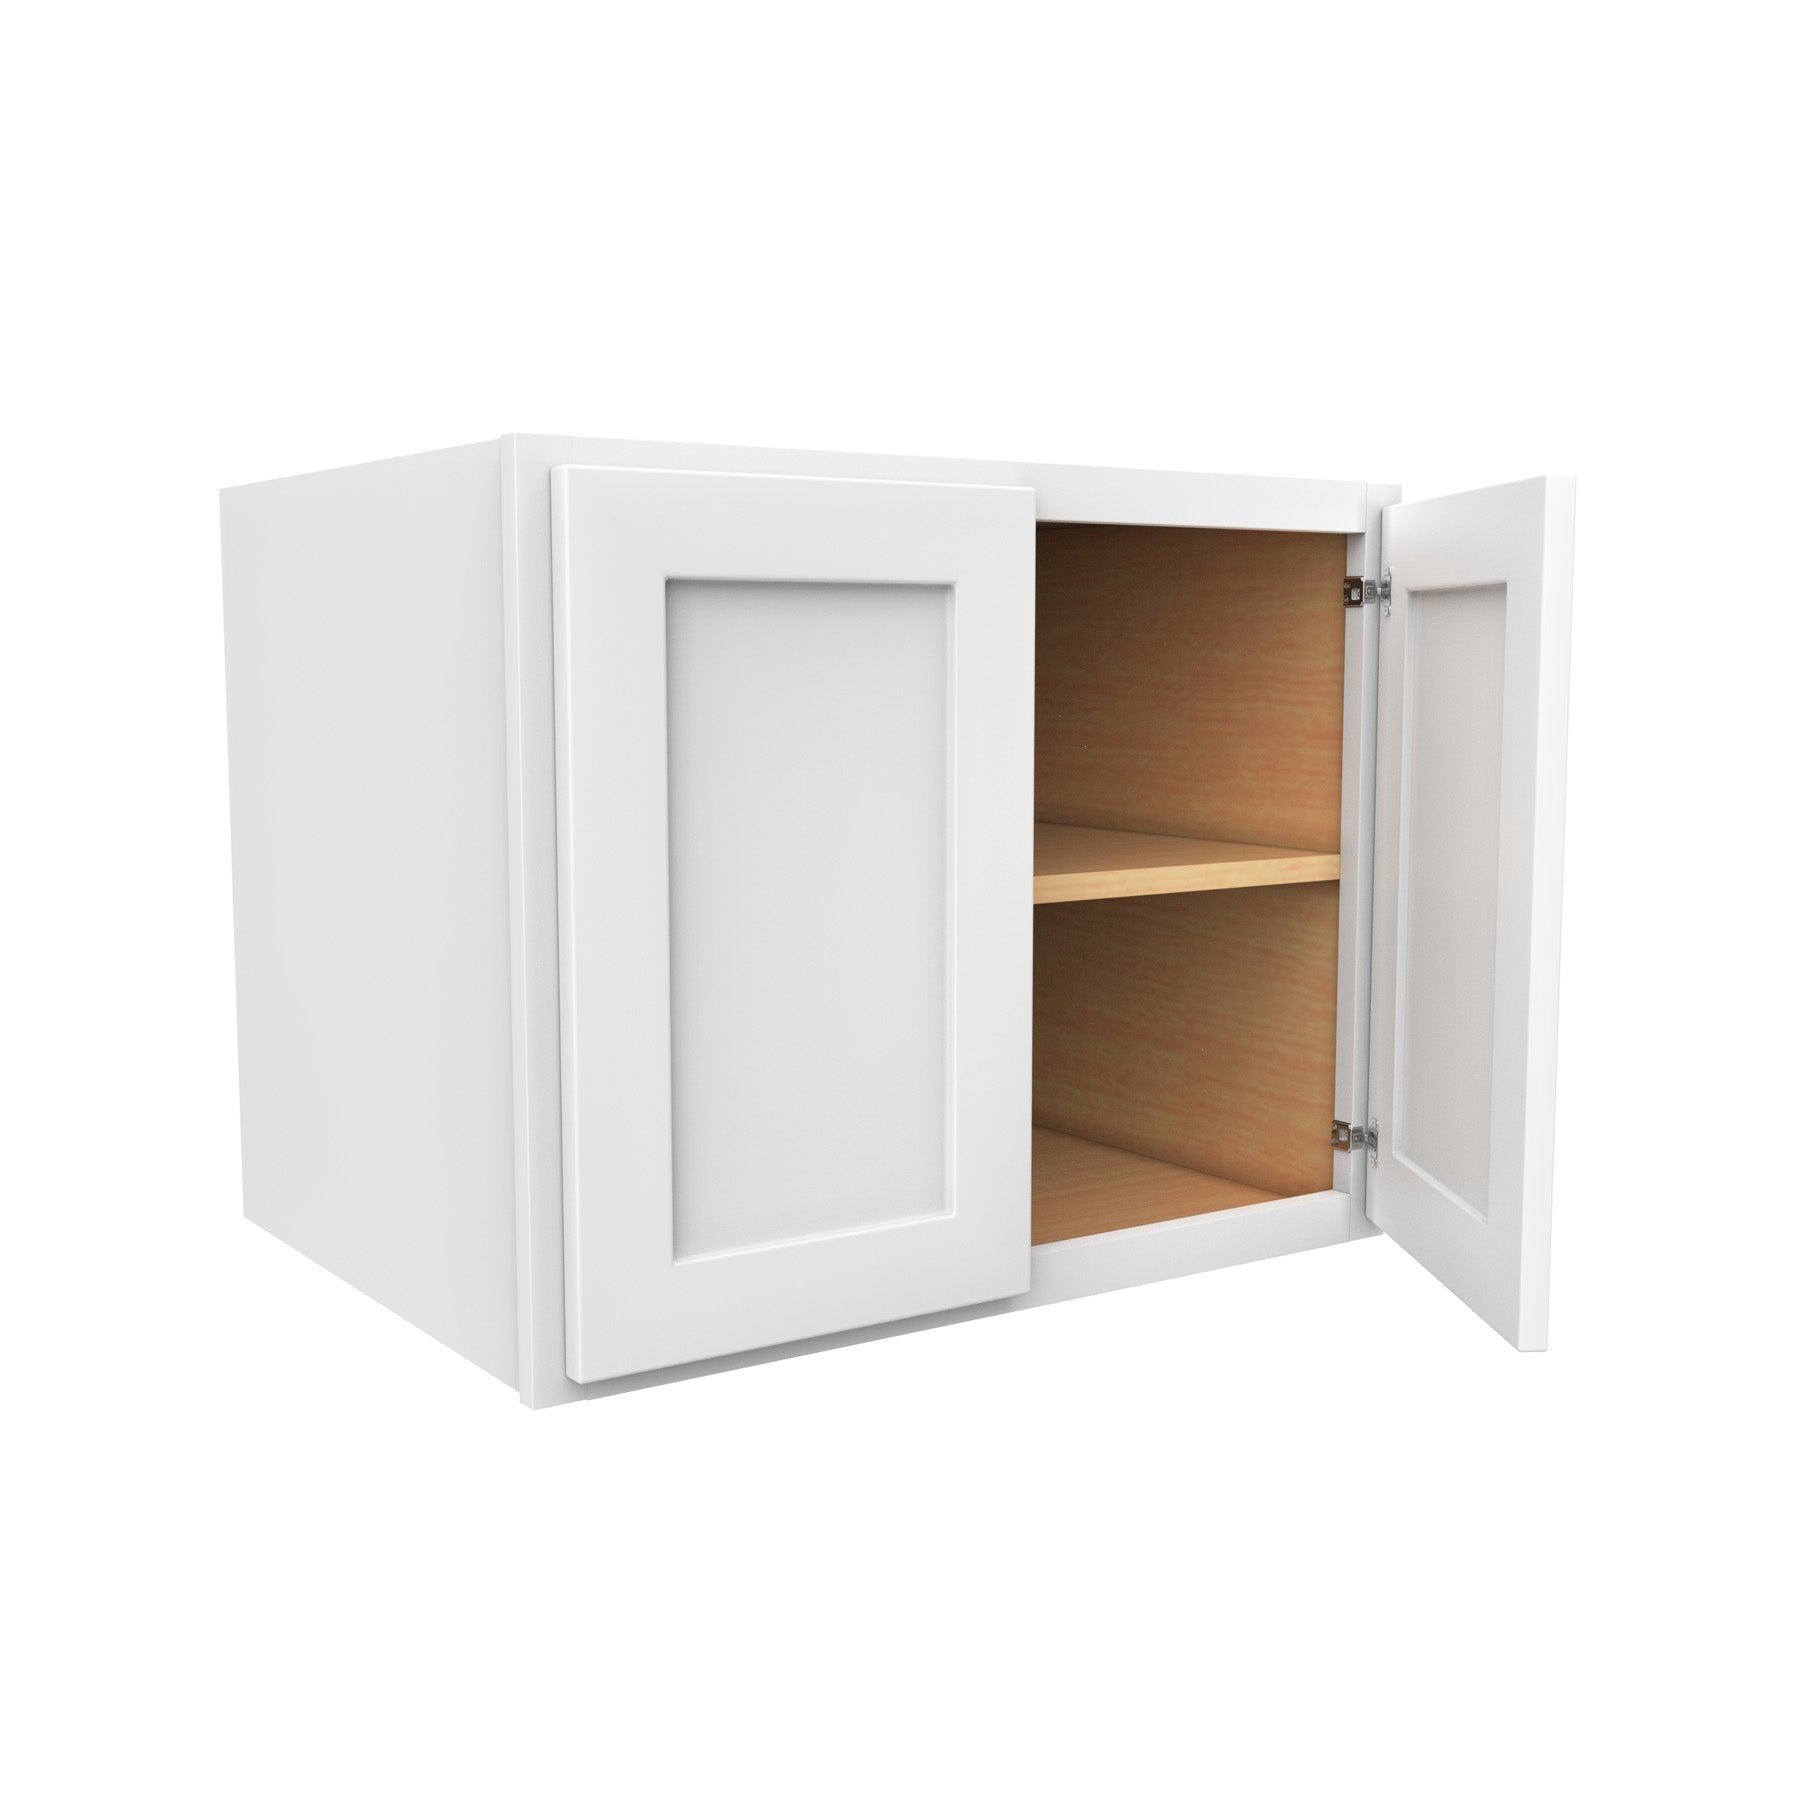 Pull Down Shelf Upper Kitchen Wall Cabinet Storage Organizer (24inch Cabinet), Size: Medium, Black